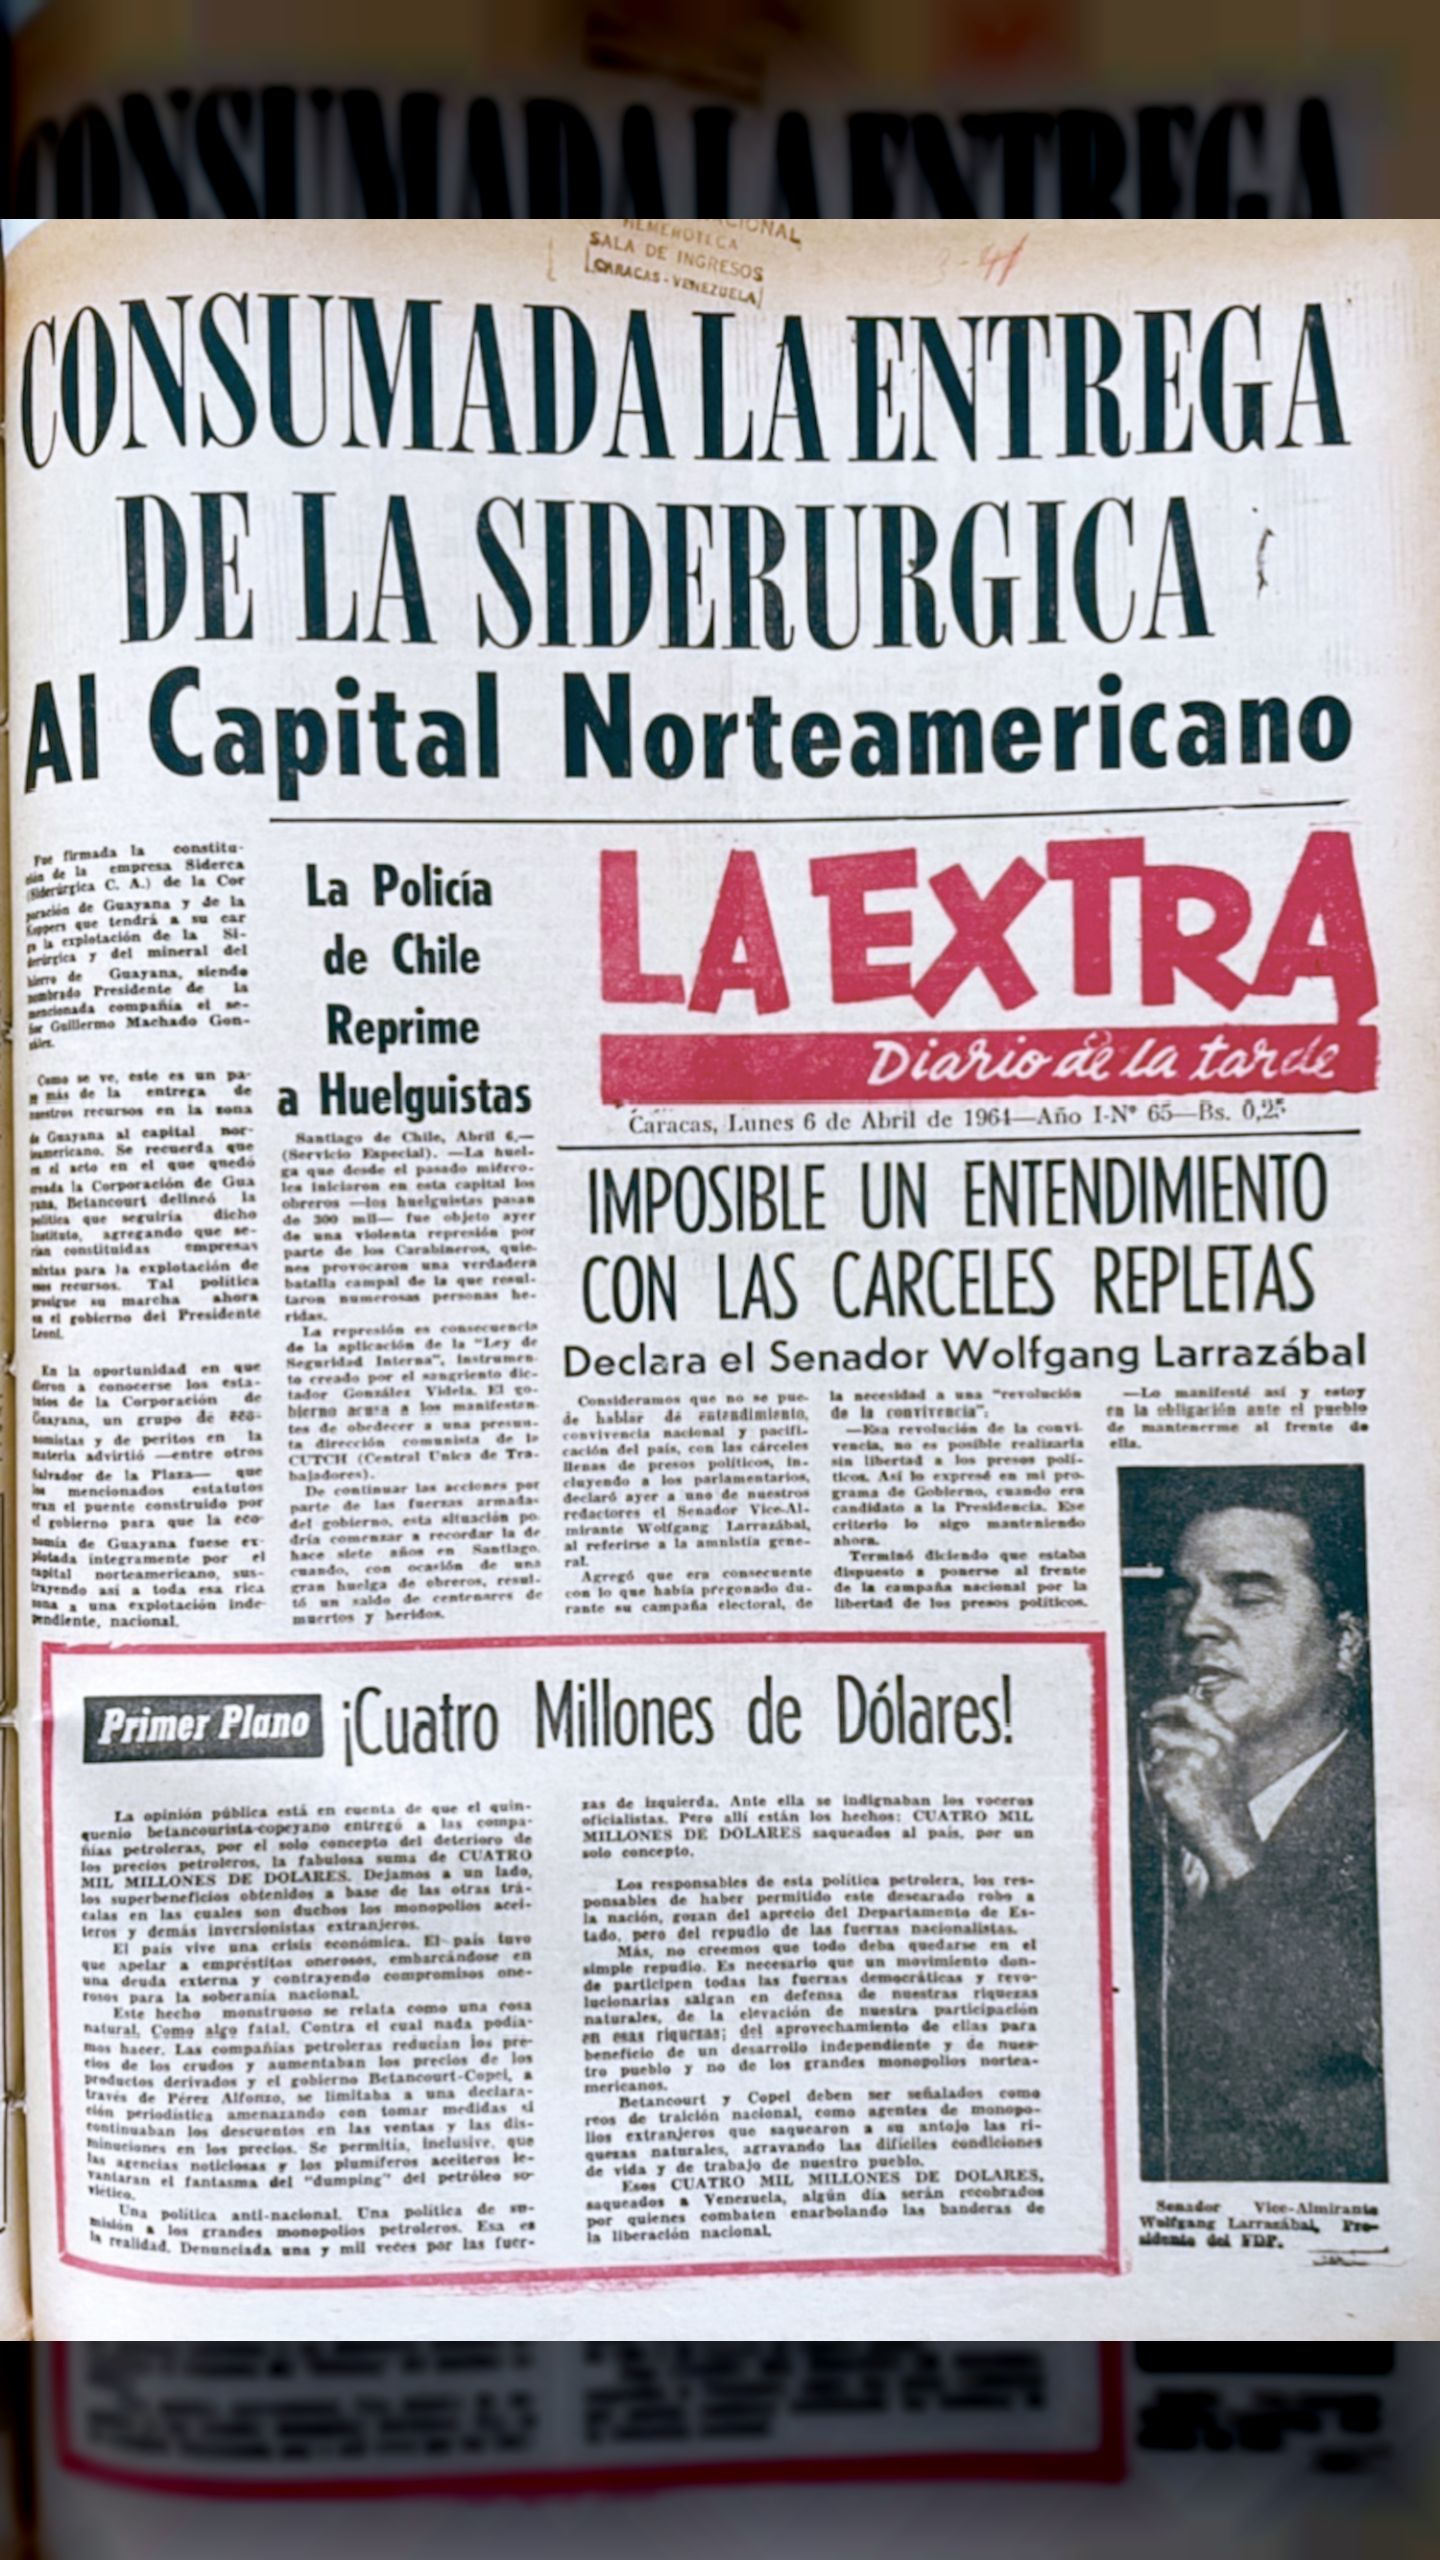 Consumada la entrega de la siderurgica al capital Norteamericano (La Extra, 6 de abril 1964)